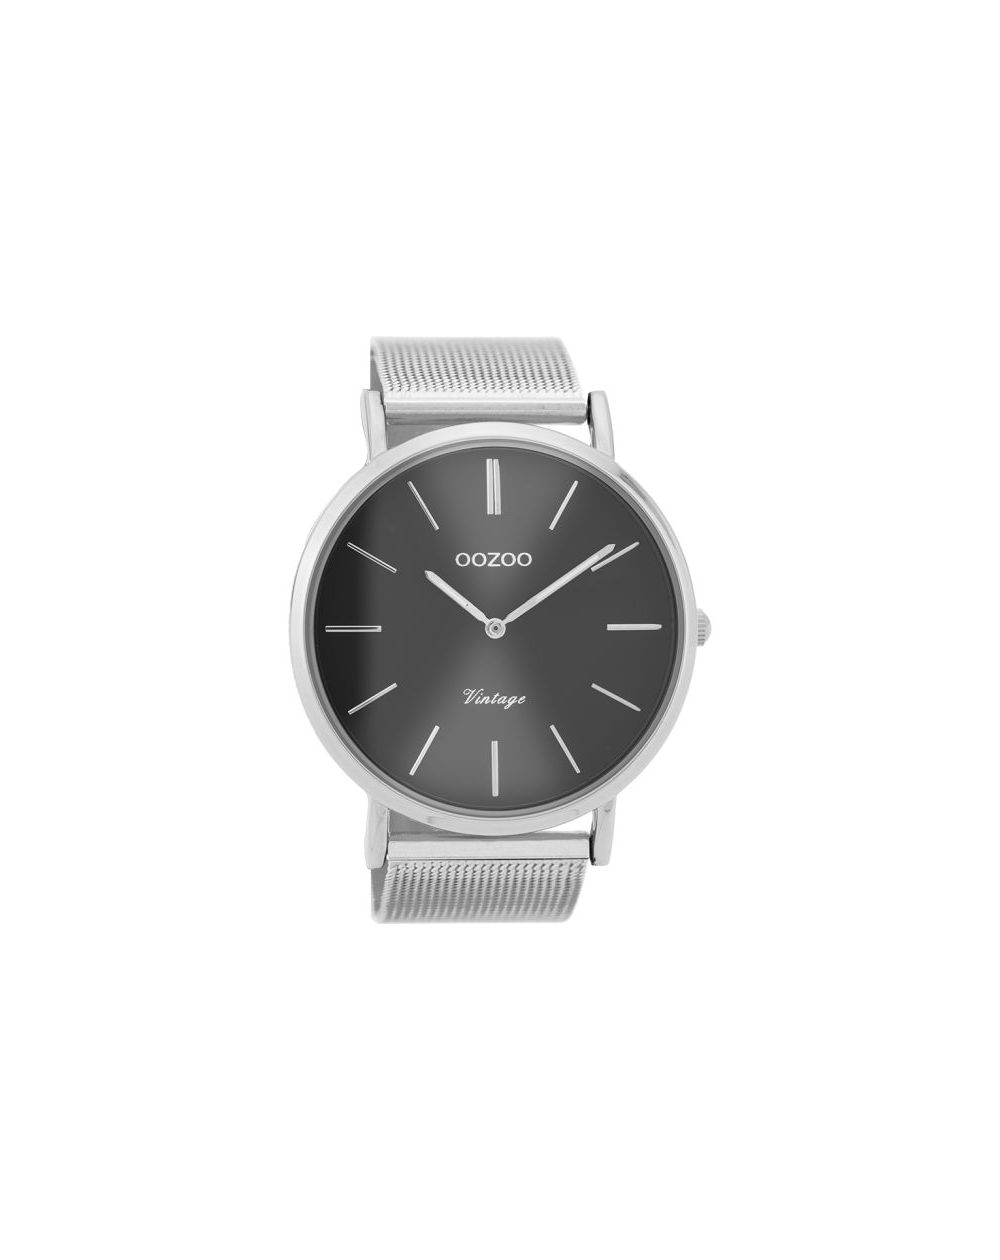 Oozoo montre/watch/horloge C9936